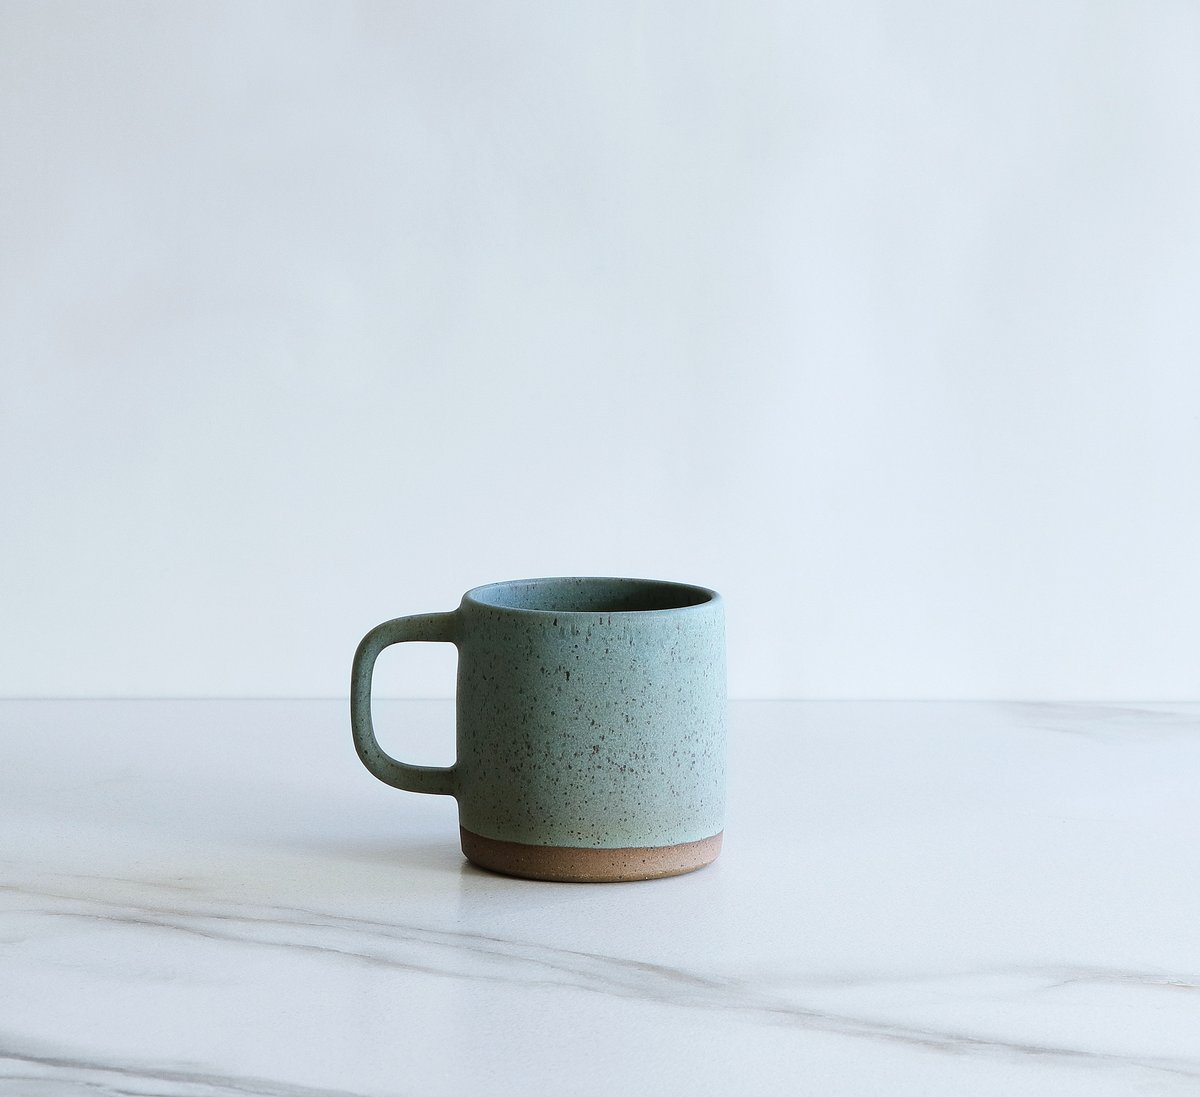 Image of 10 oz mug, glazed in Mint